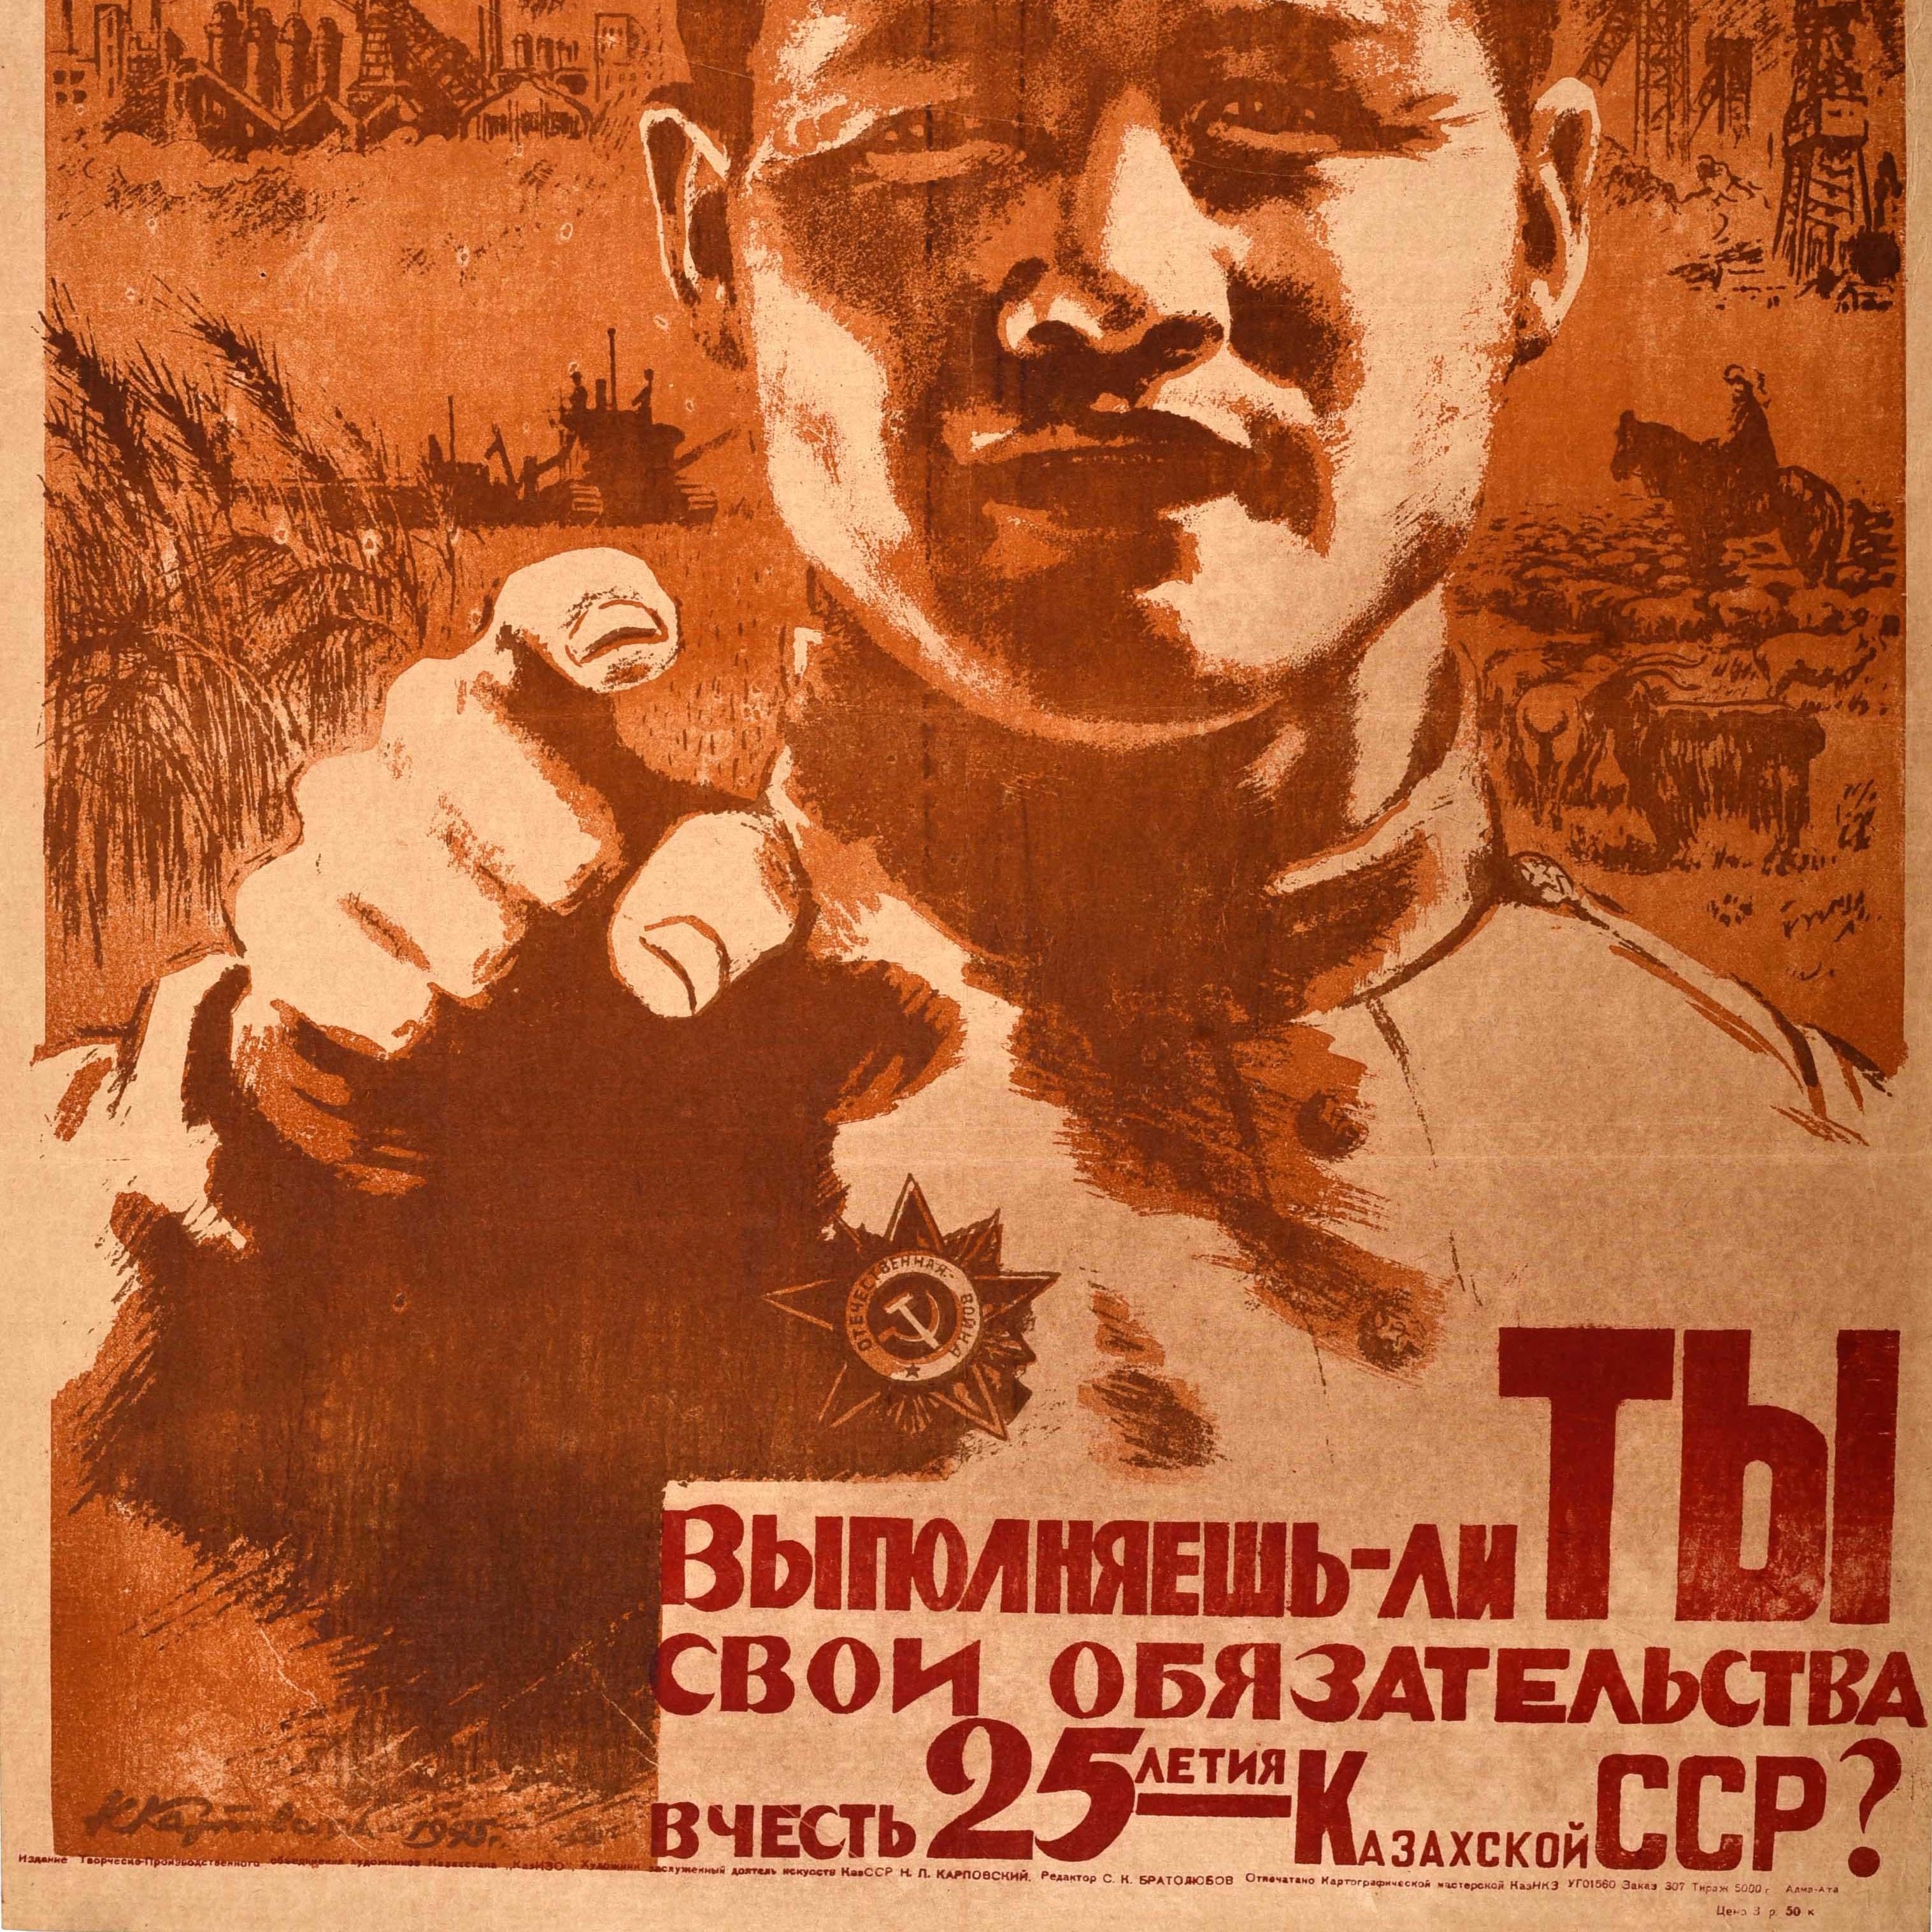 Affiche de propagande soviétique d'époque - Remplissez-vous vos obligations en l'honneur du 25e anniversaire de la République socialiste soviétique du Kazakhstan ? - représentant un soldat en uniforme militaire pointant du doigt le spectateur, avec